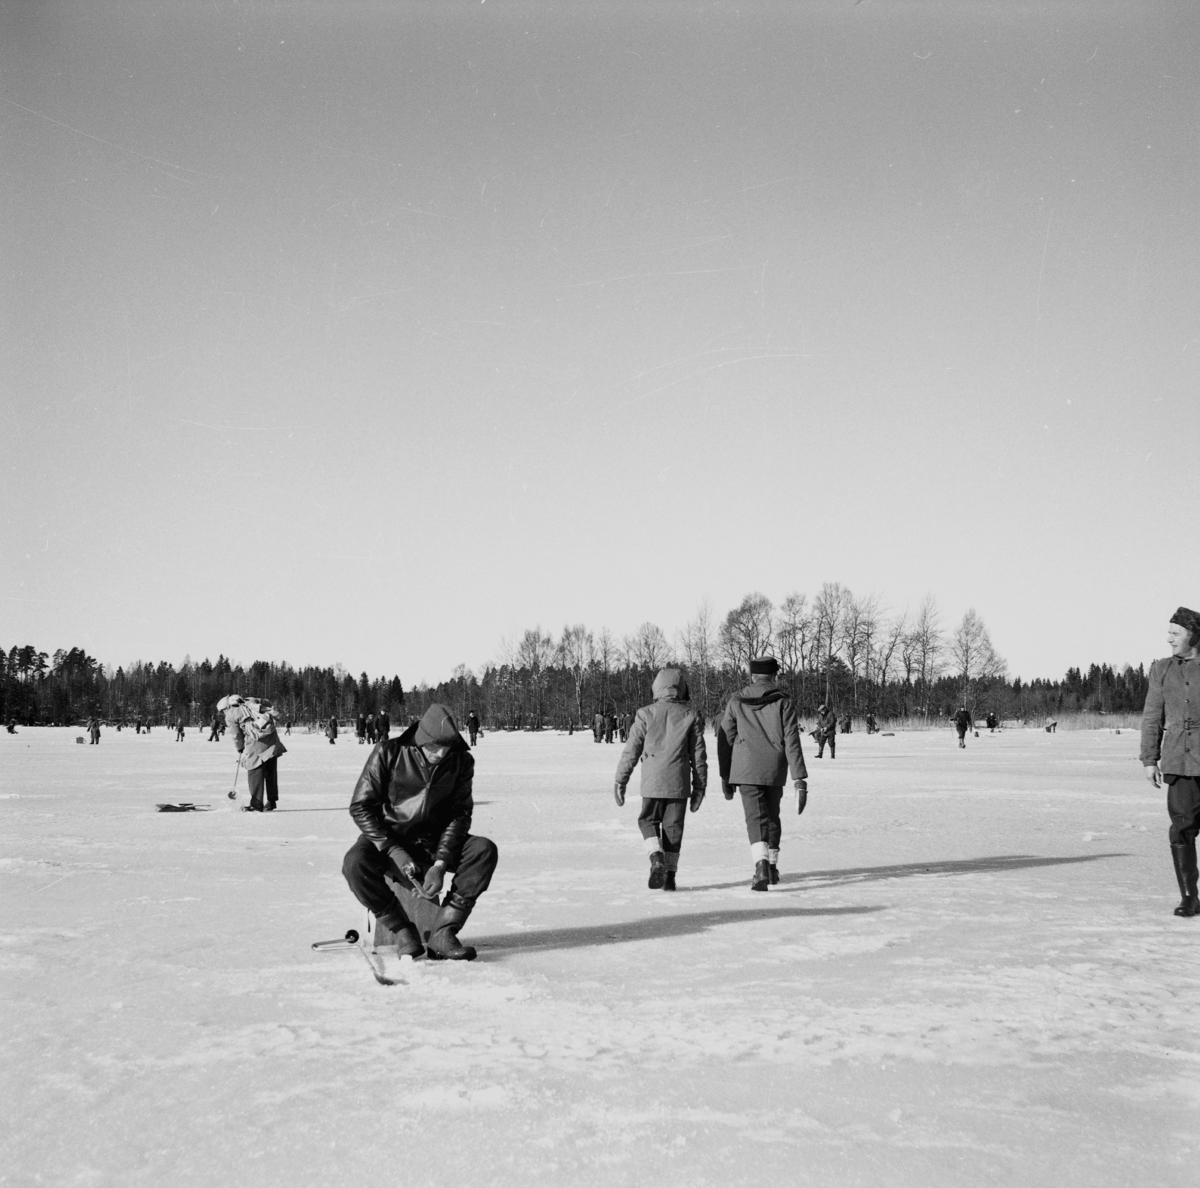 Pimpeltävling på sjön Nätaren utanför Lekeryd den 22 februari.